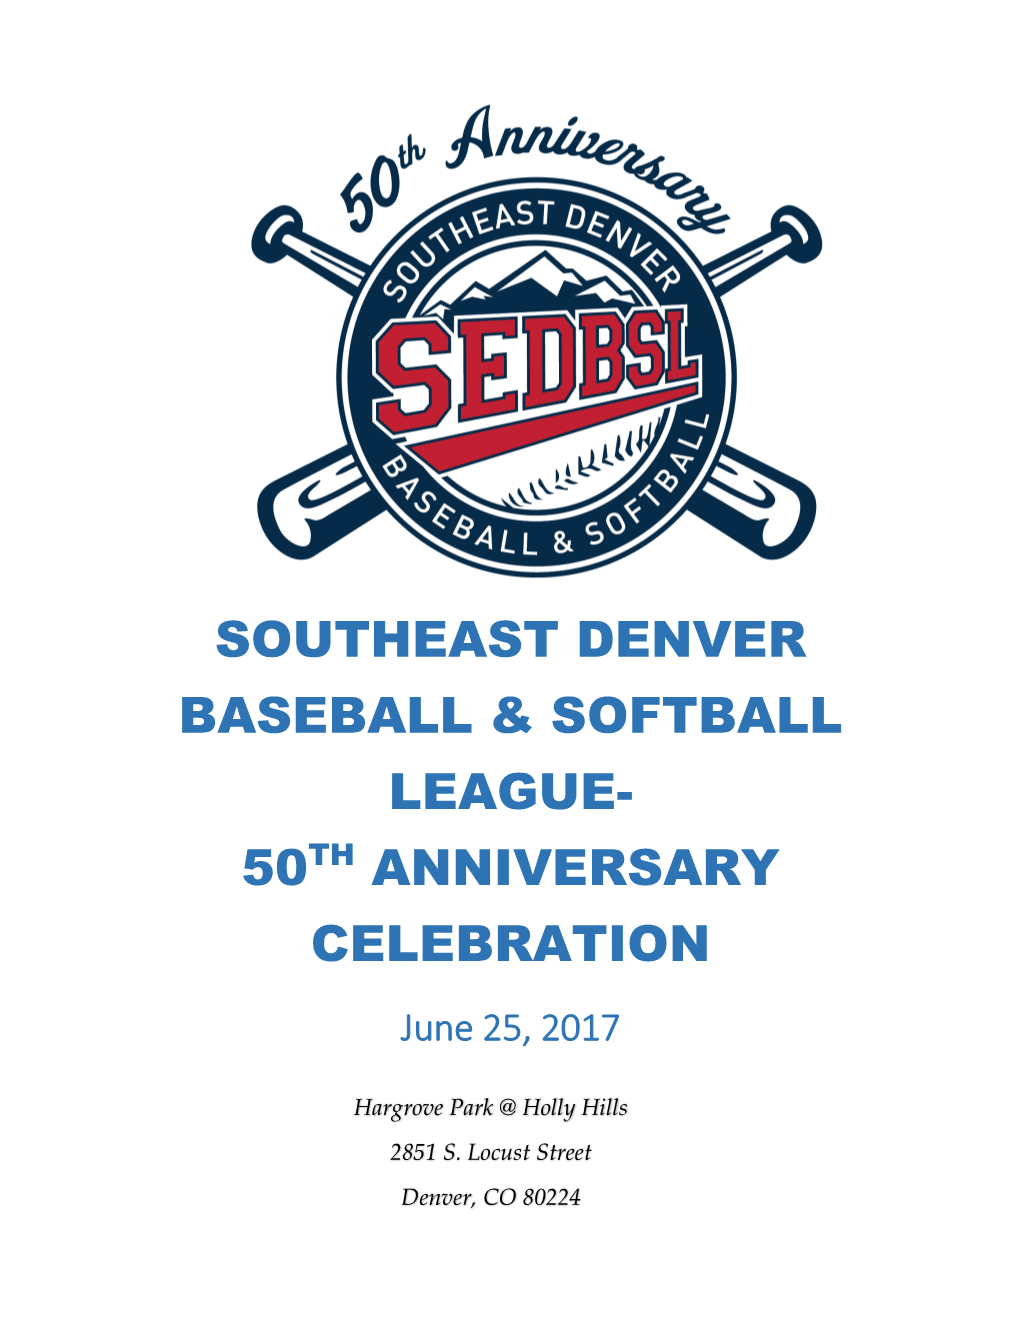 Southeast Denver Baseball & Softball League